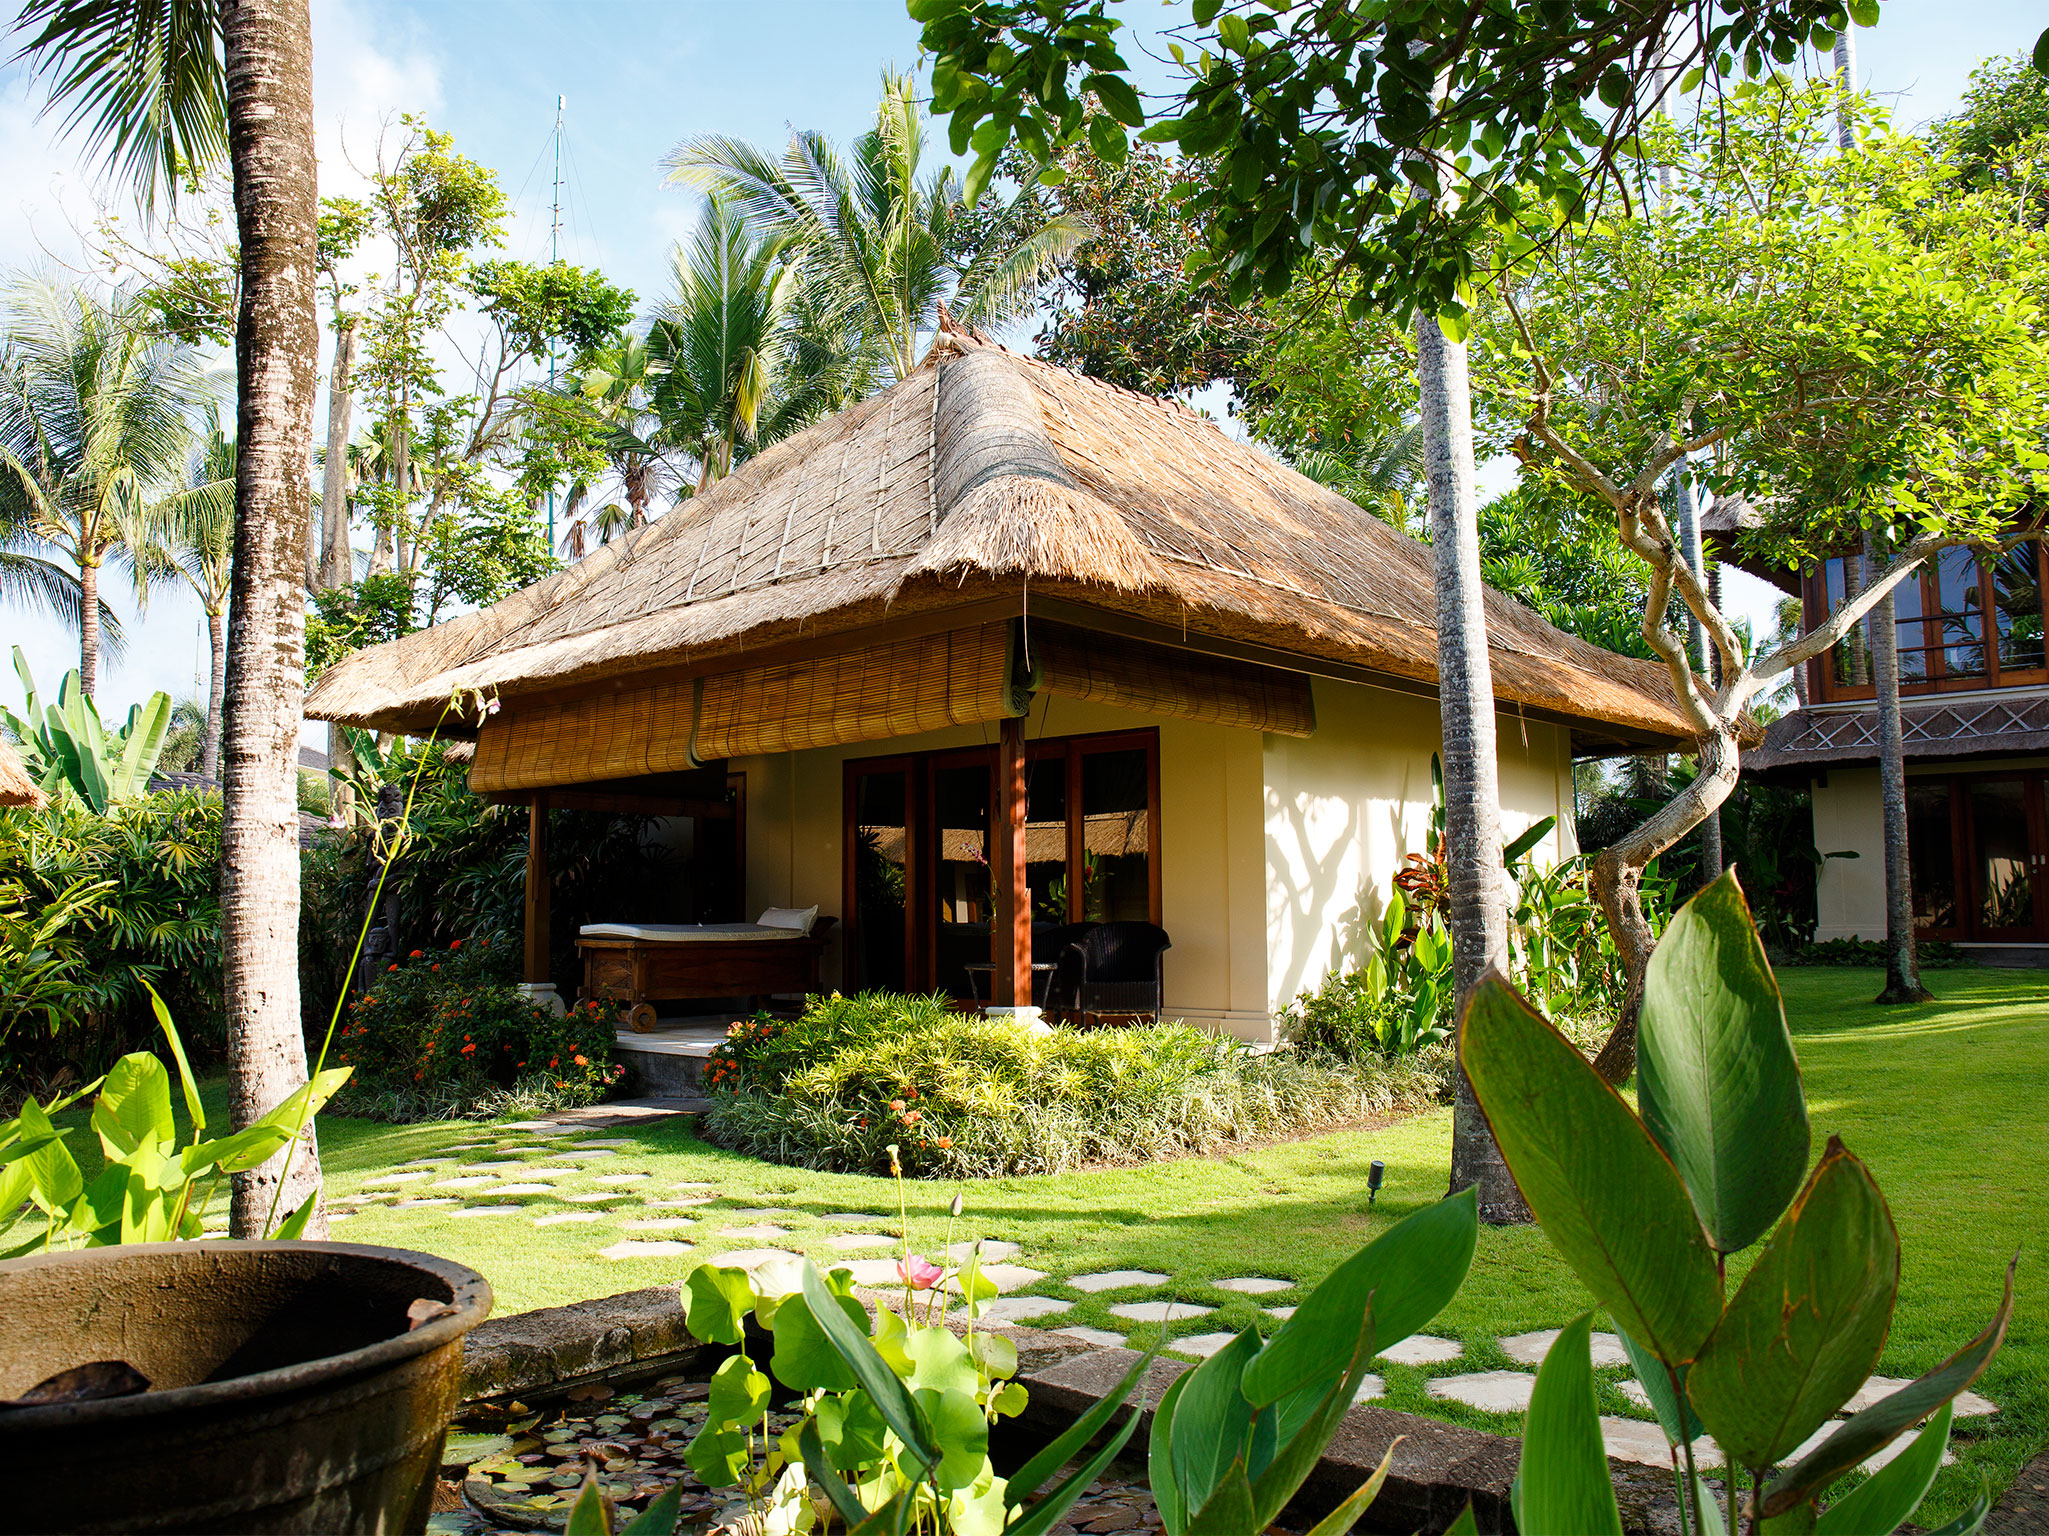 Villa Maridadi - Exquisite garden setting - Villa Maridadi, Seseh-Tanah Lot, Bali